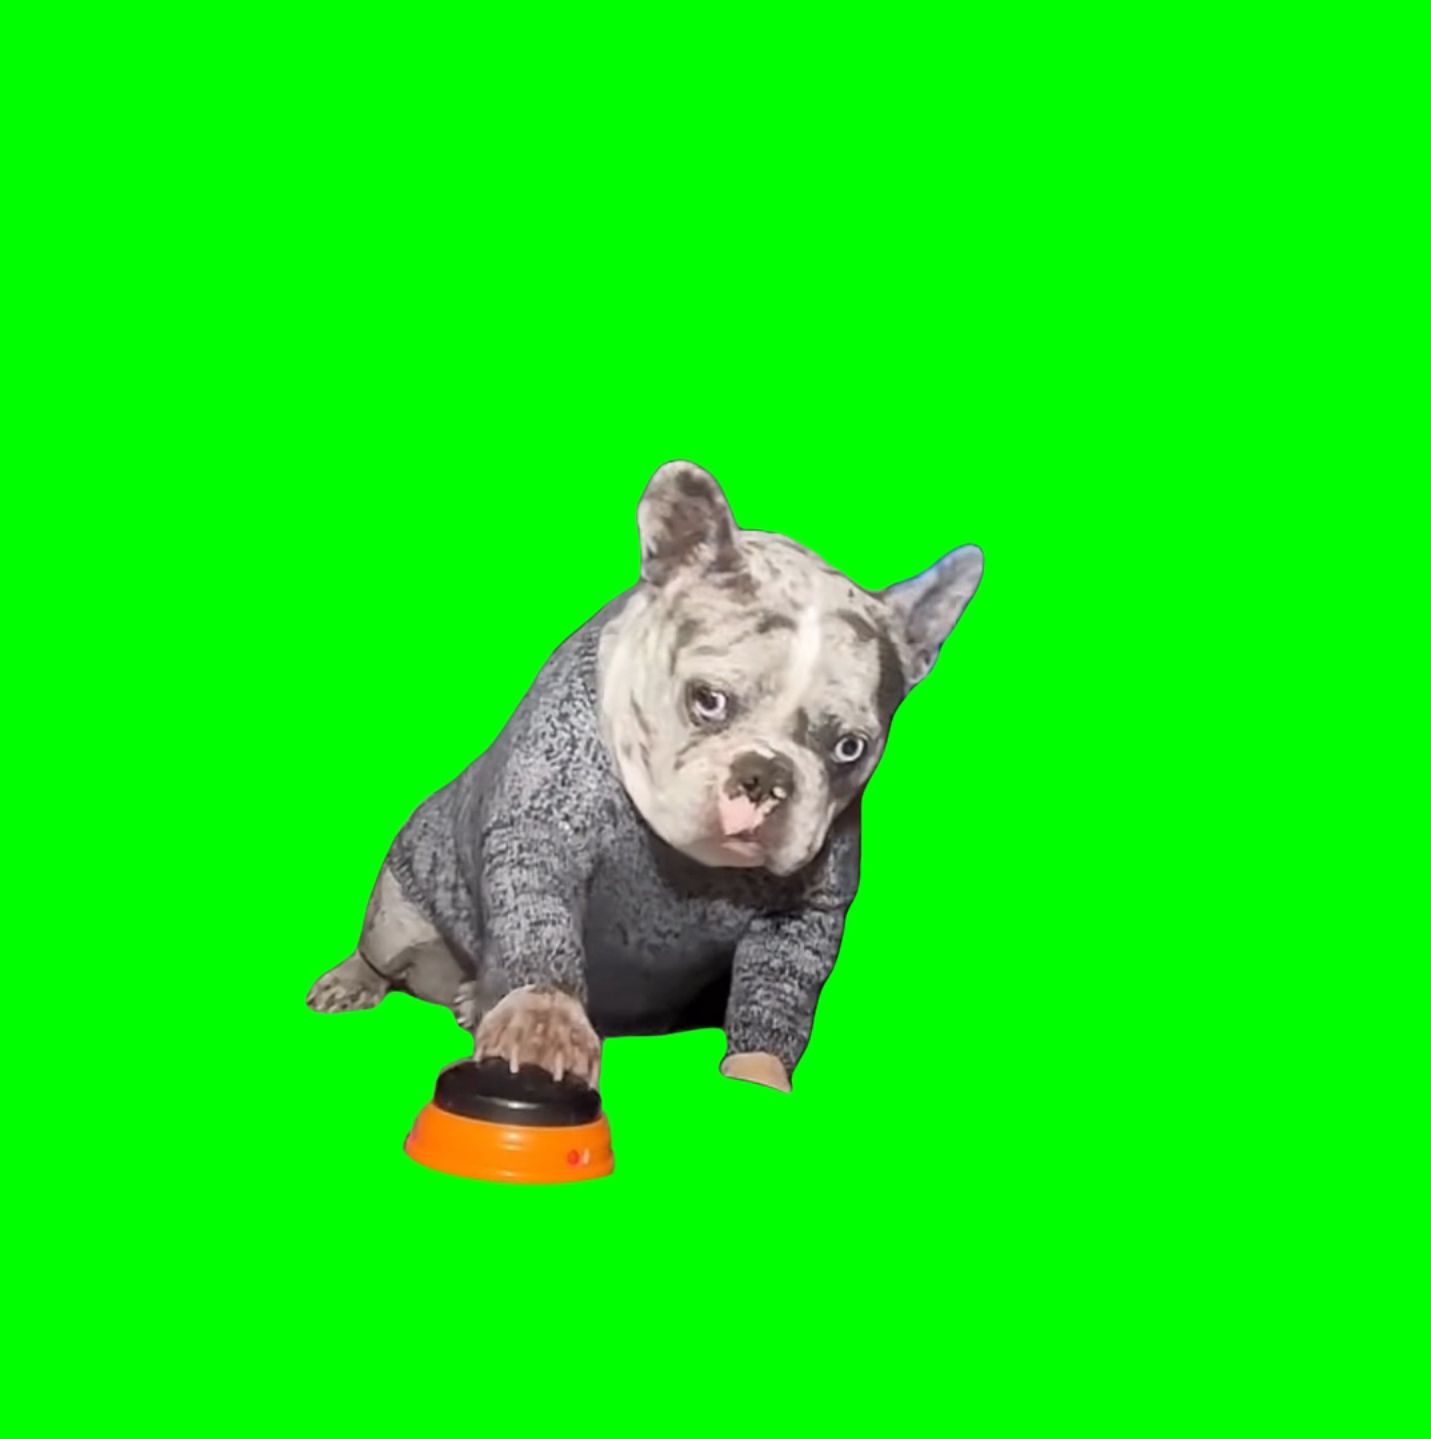 HELL NAW! Dog meme (Green Screen)